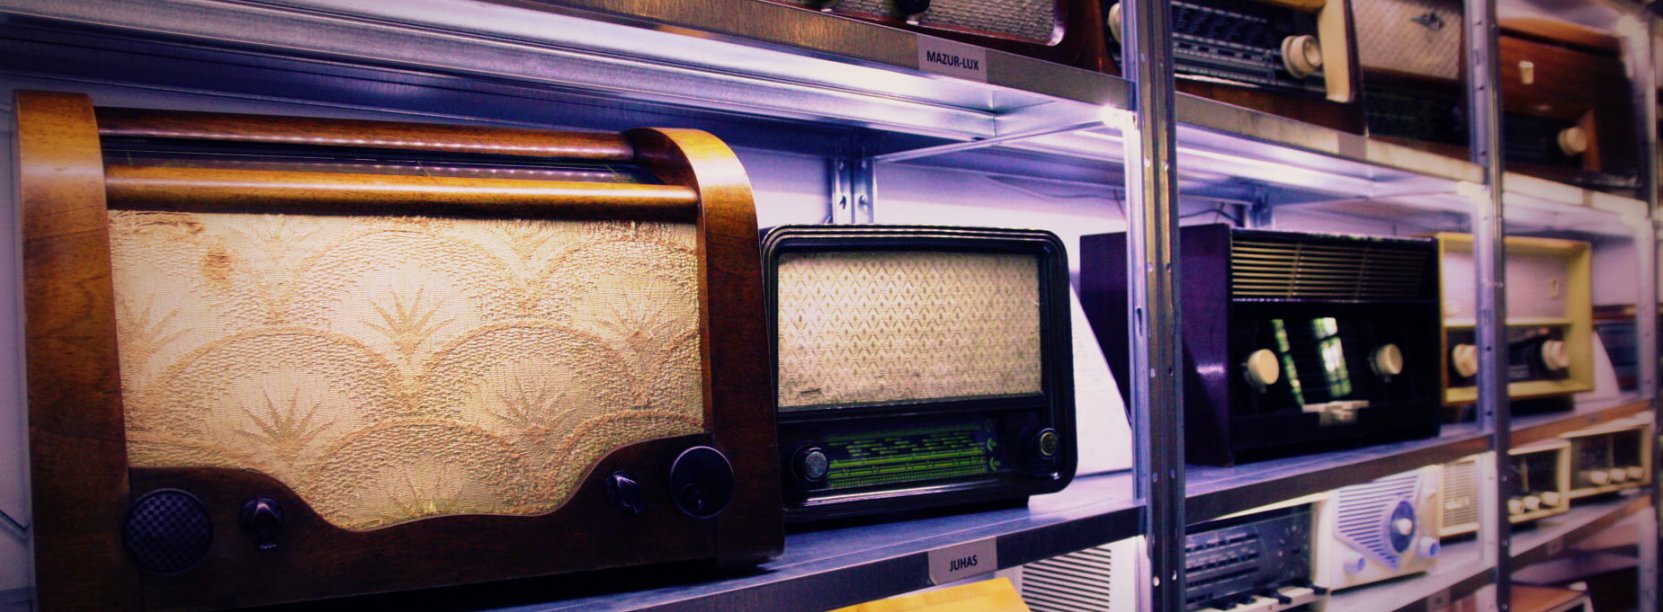 Zabytkowe radioodbioniki ustawione na półkach